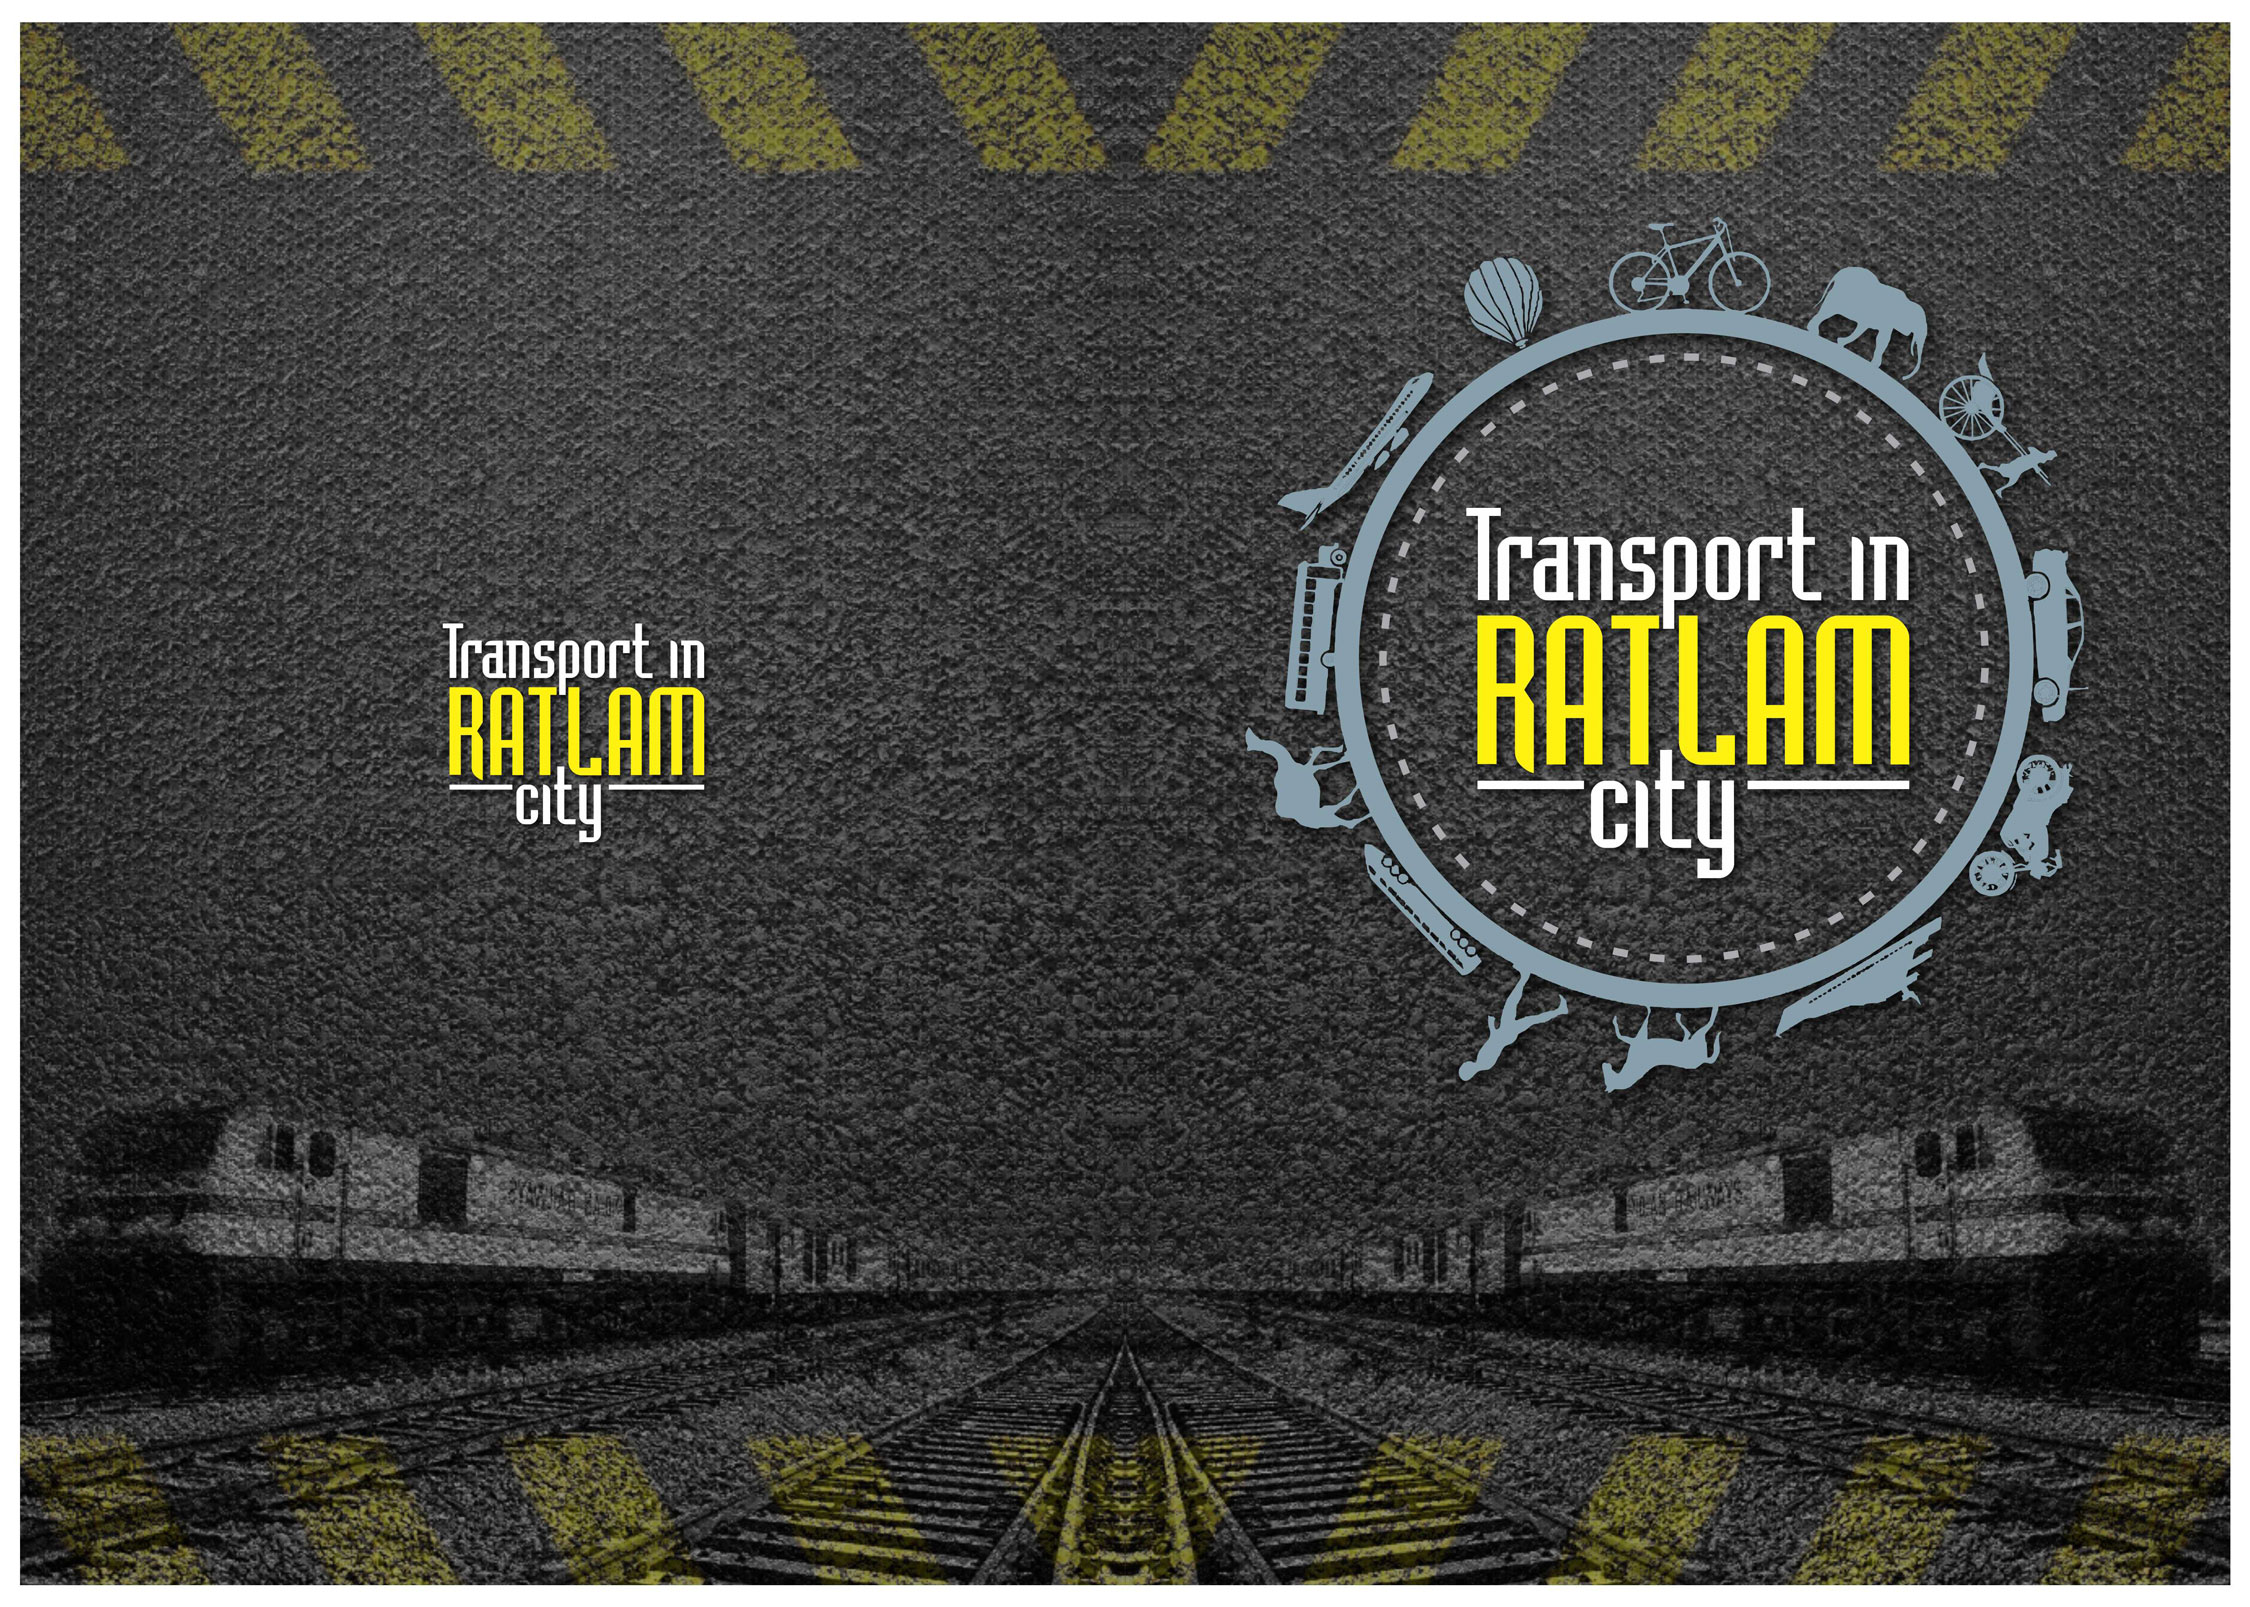 creative-poster-ratlam-transport-graphic-design